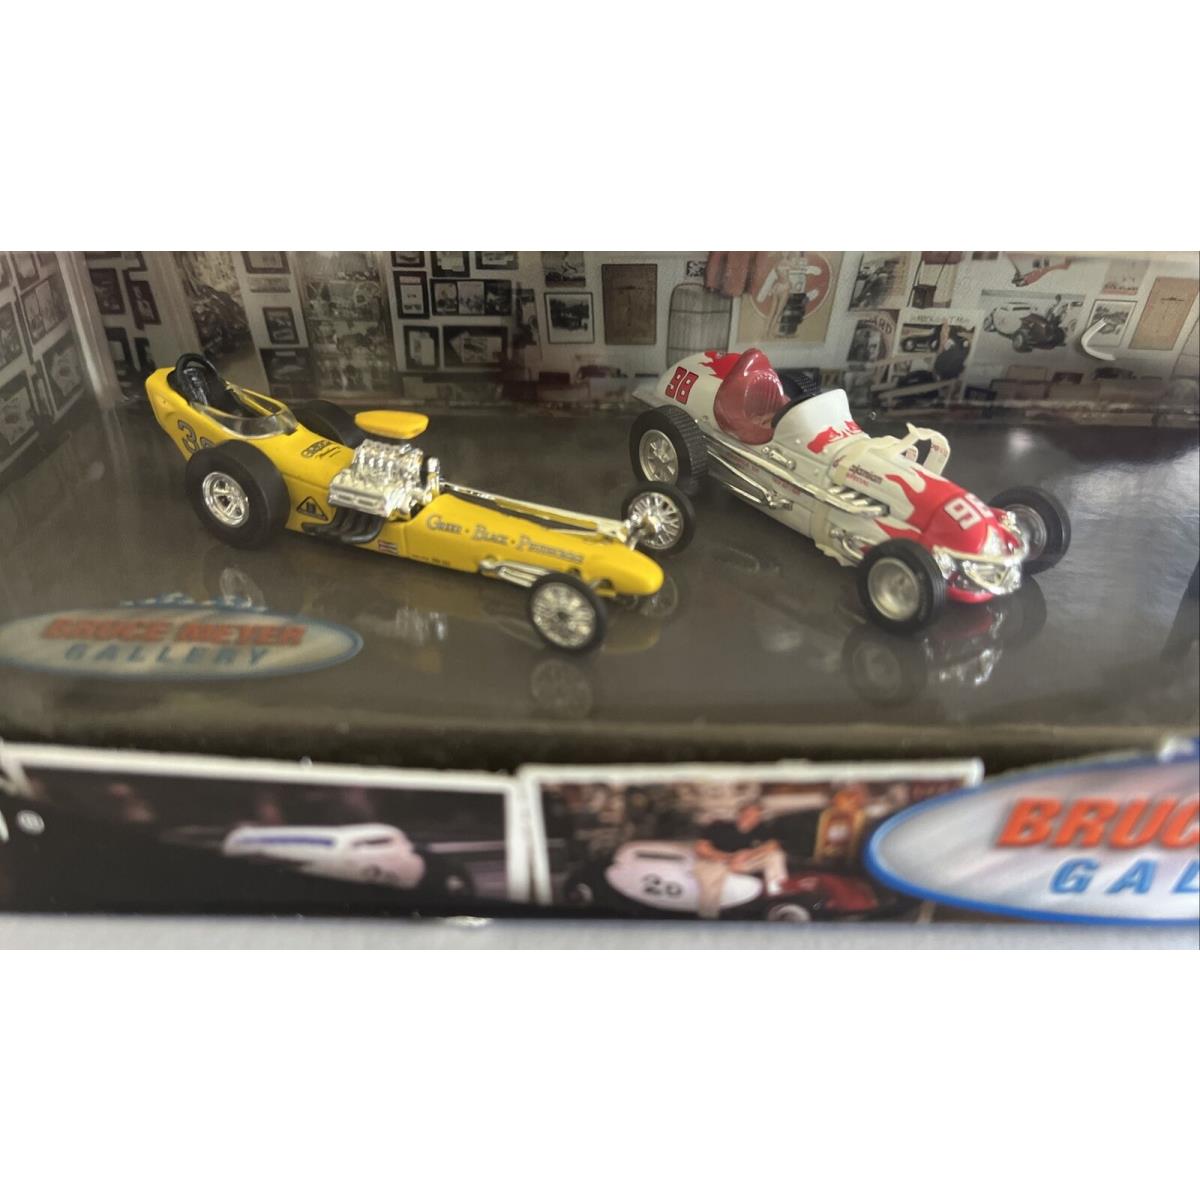 Hot Wheels Bruce Meyer Gallery 4 Car Set Vintage Racing Die Cast B222